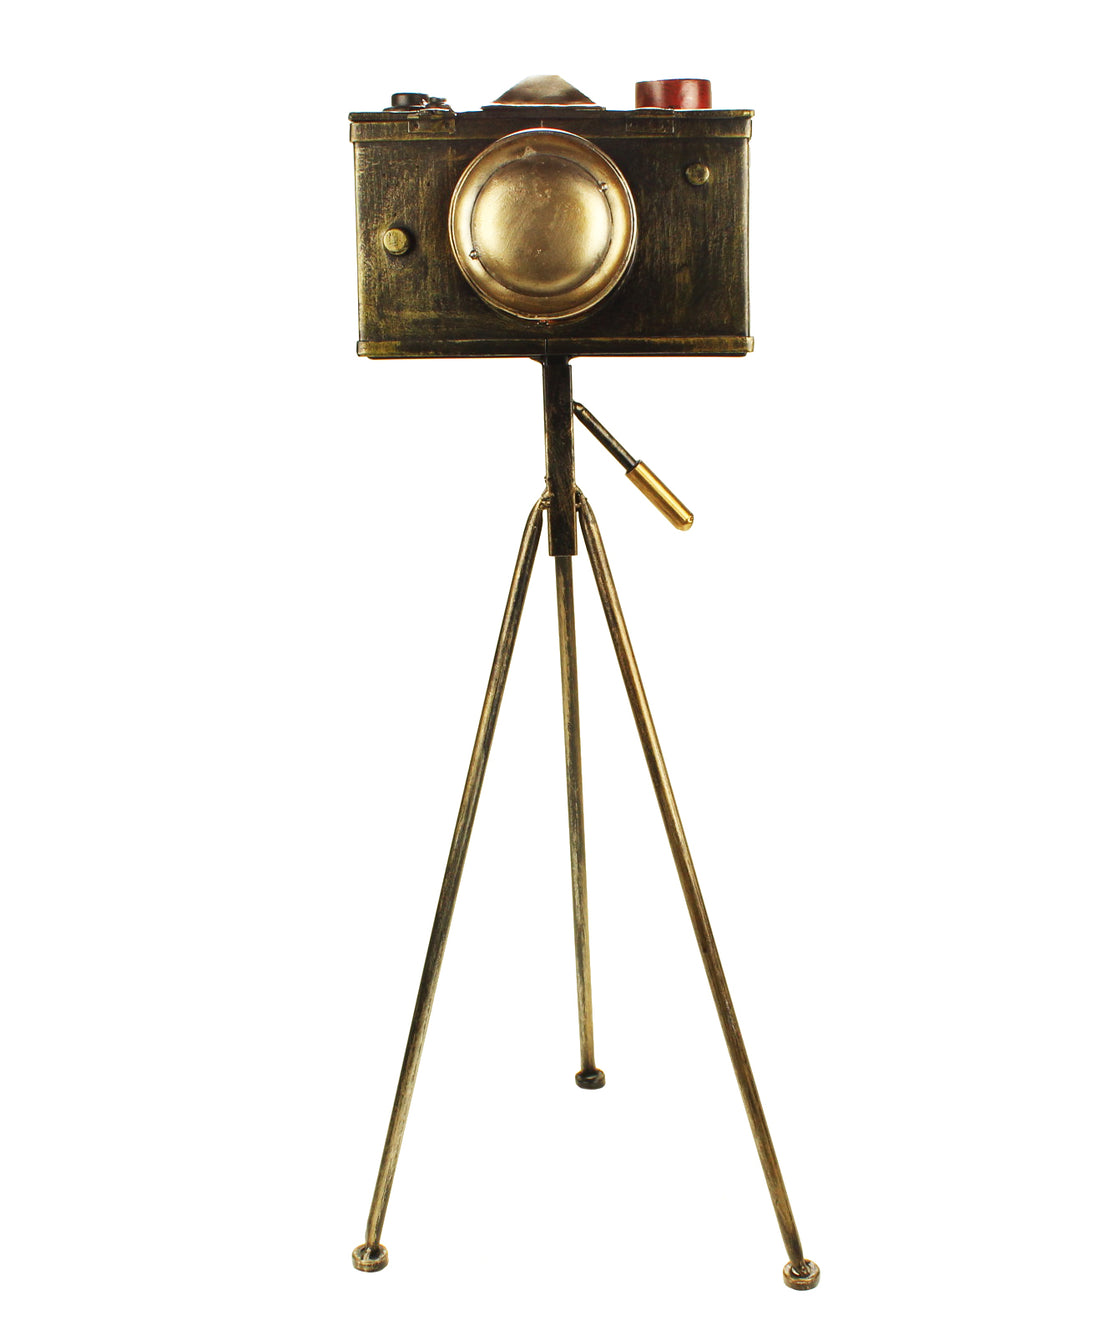 Tin Camera